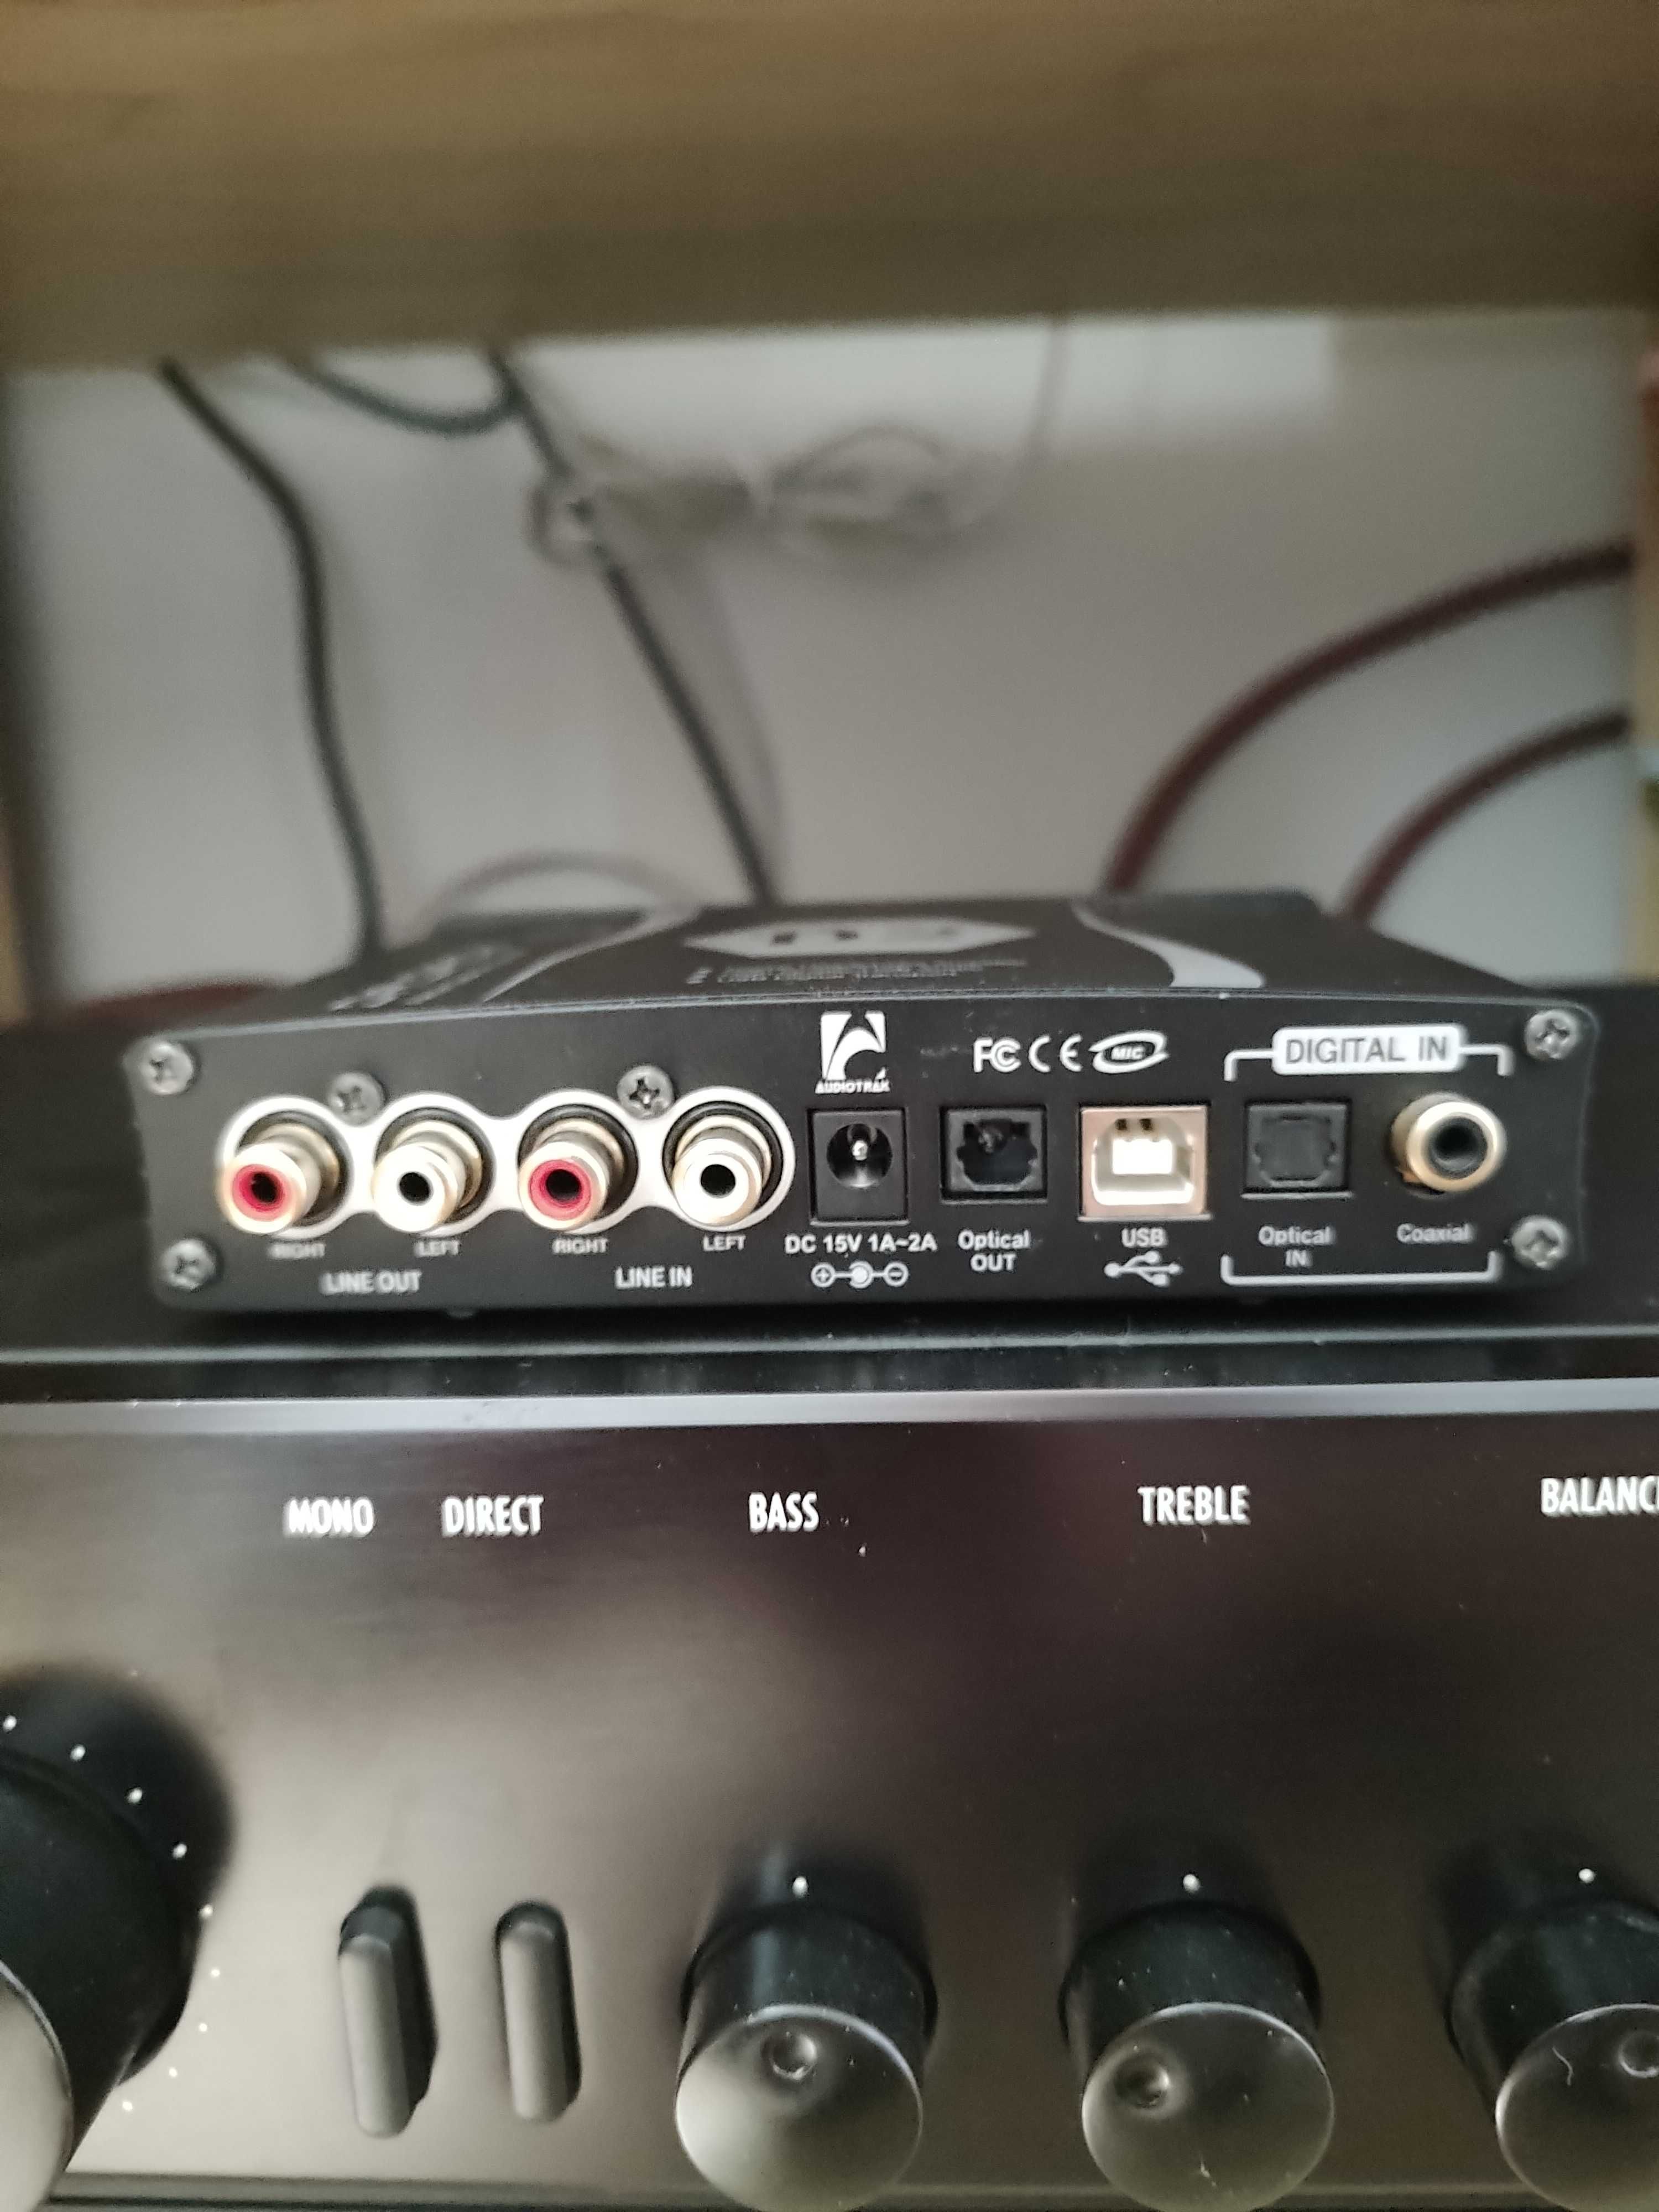 ЦАП + підсилювач Audiotrak Dr. Dac 2 DX /Звукова карта, аудіоінтерфейс